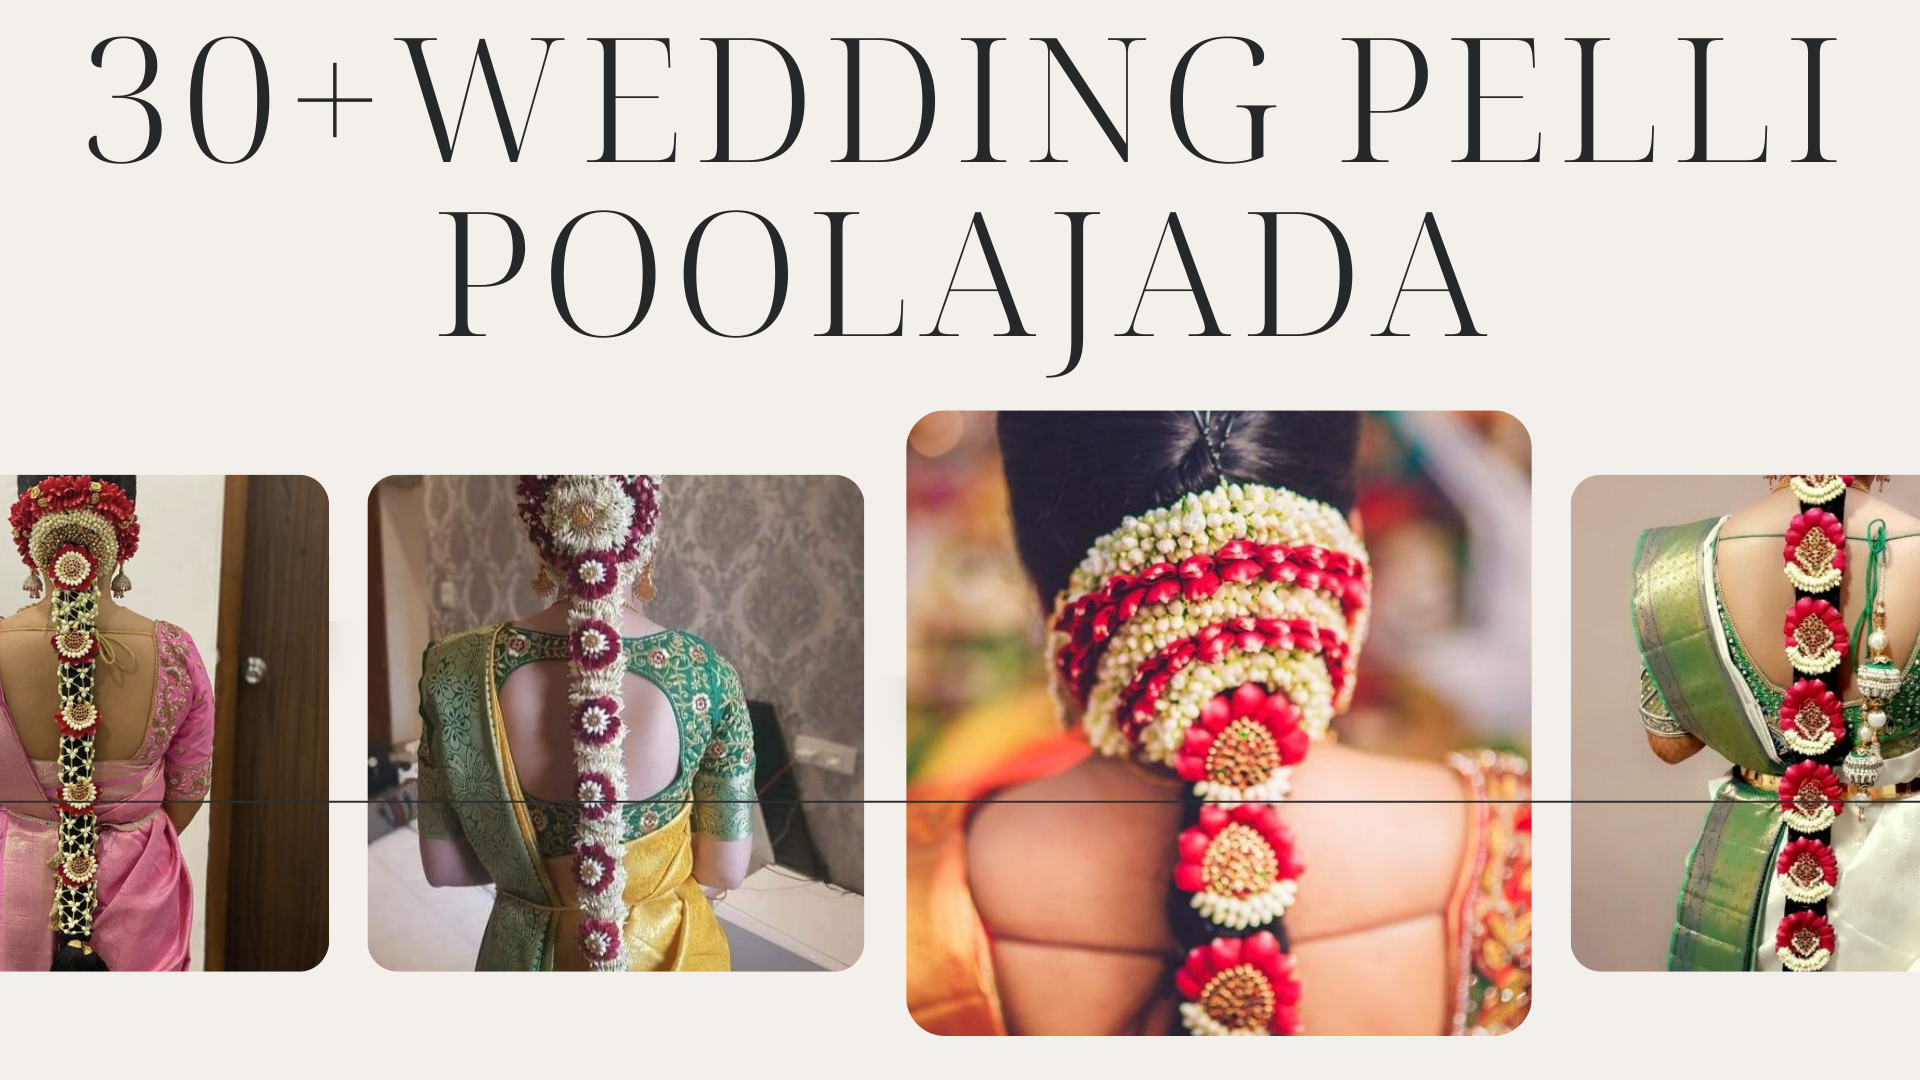 30 Wedding Pelli Poola Jada